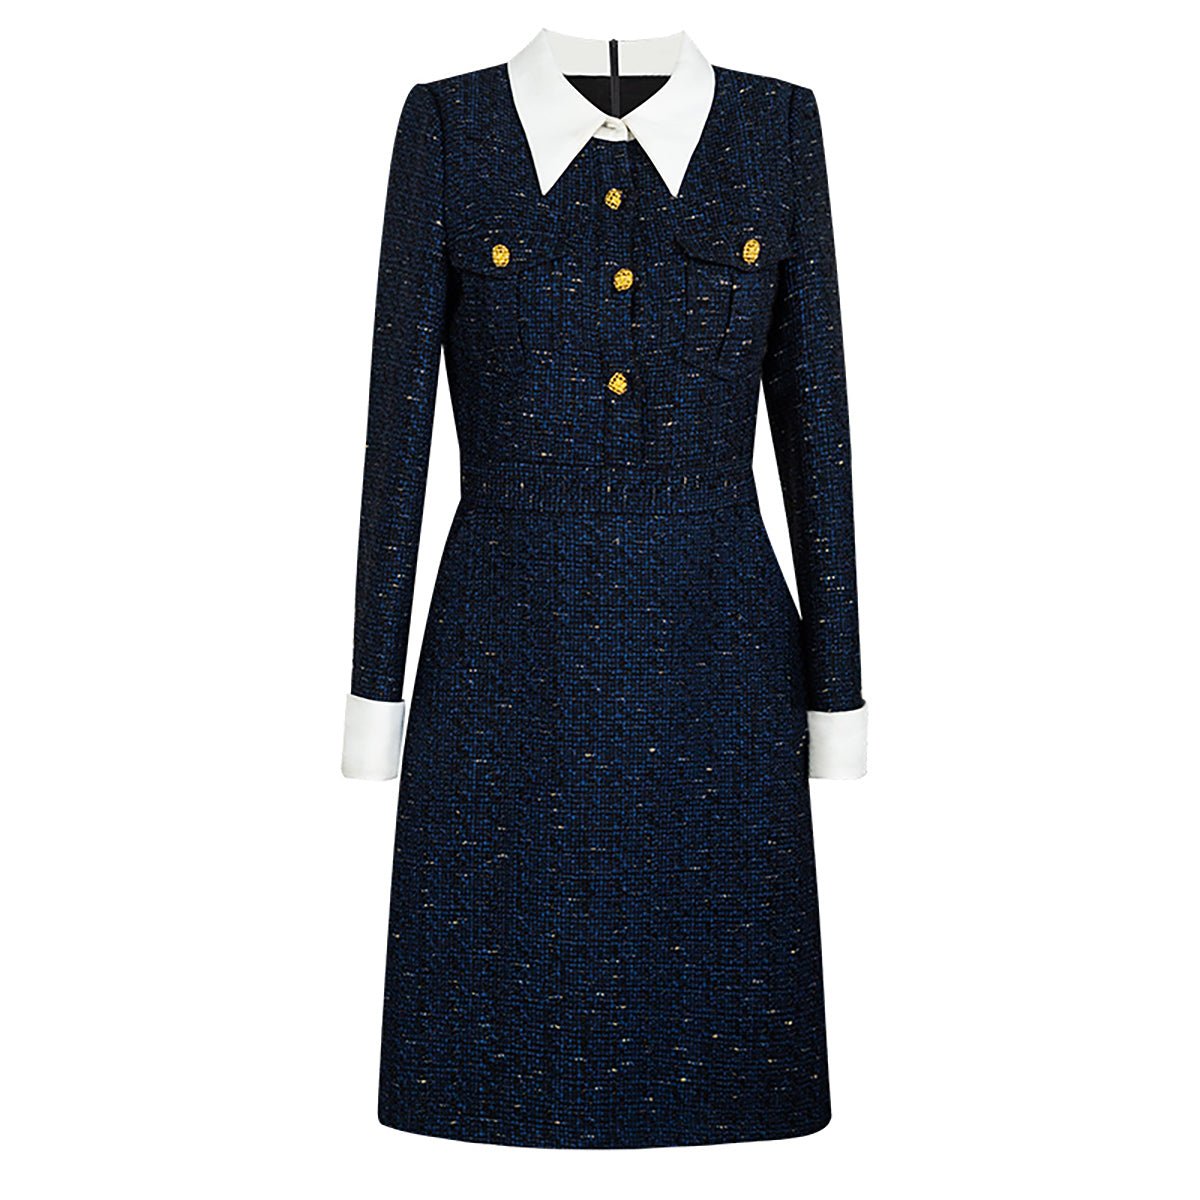 Tweed Knee-Length Navy Dress - 0cm